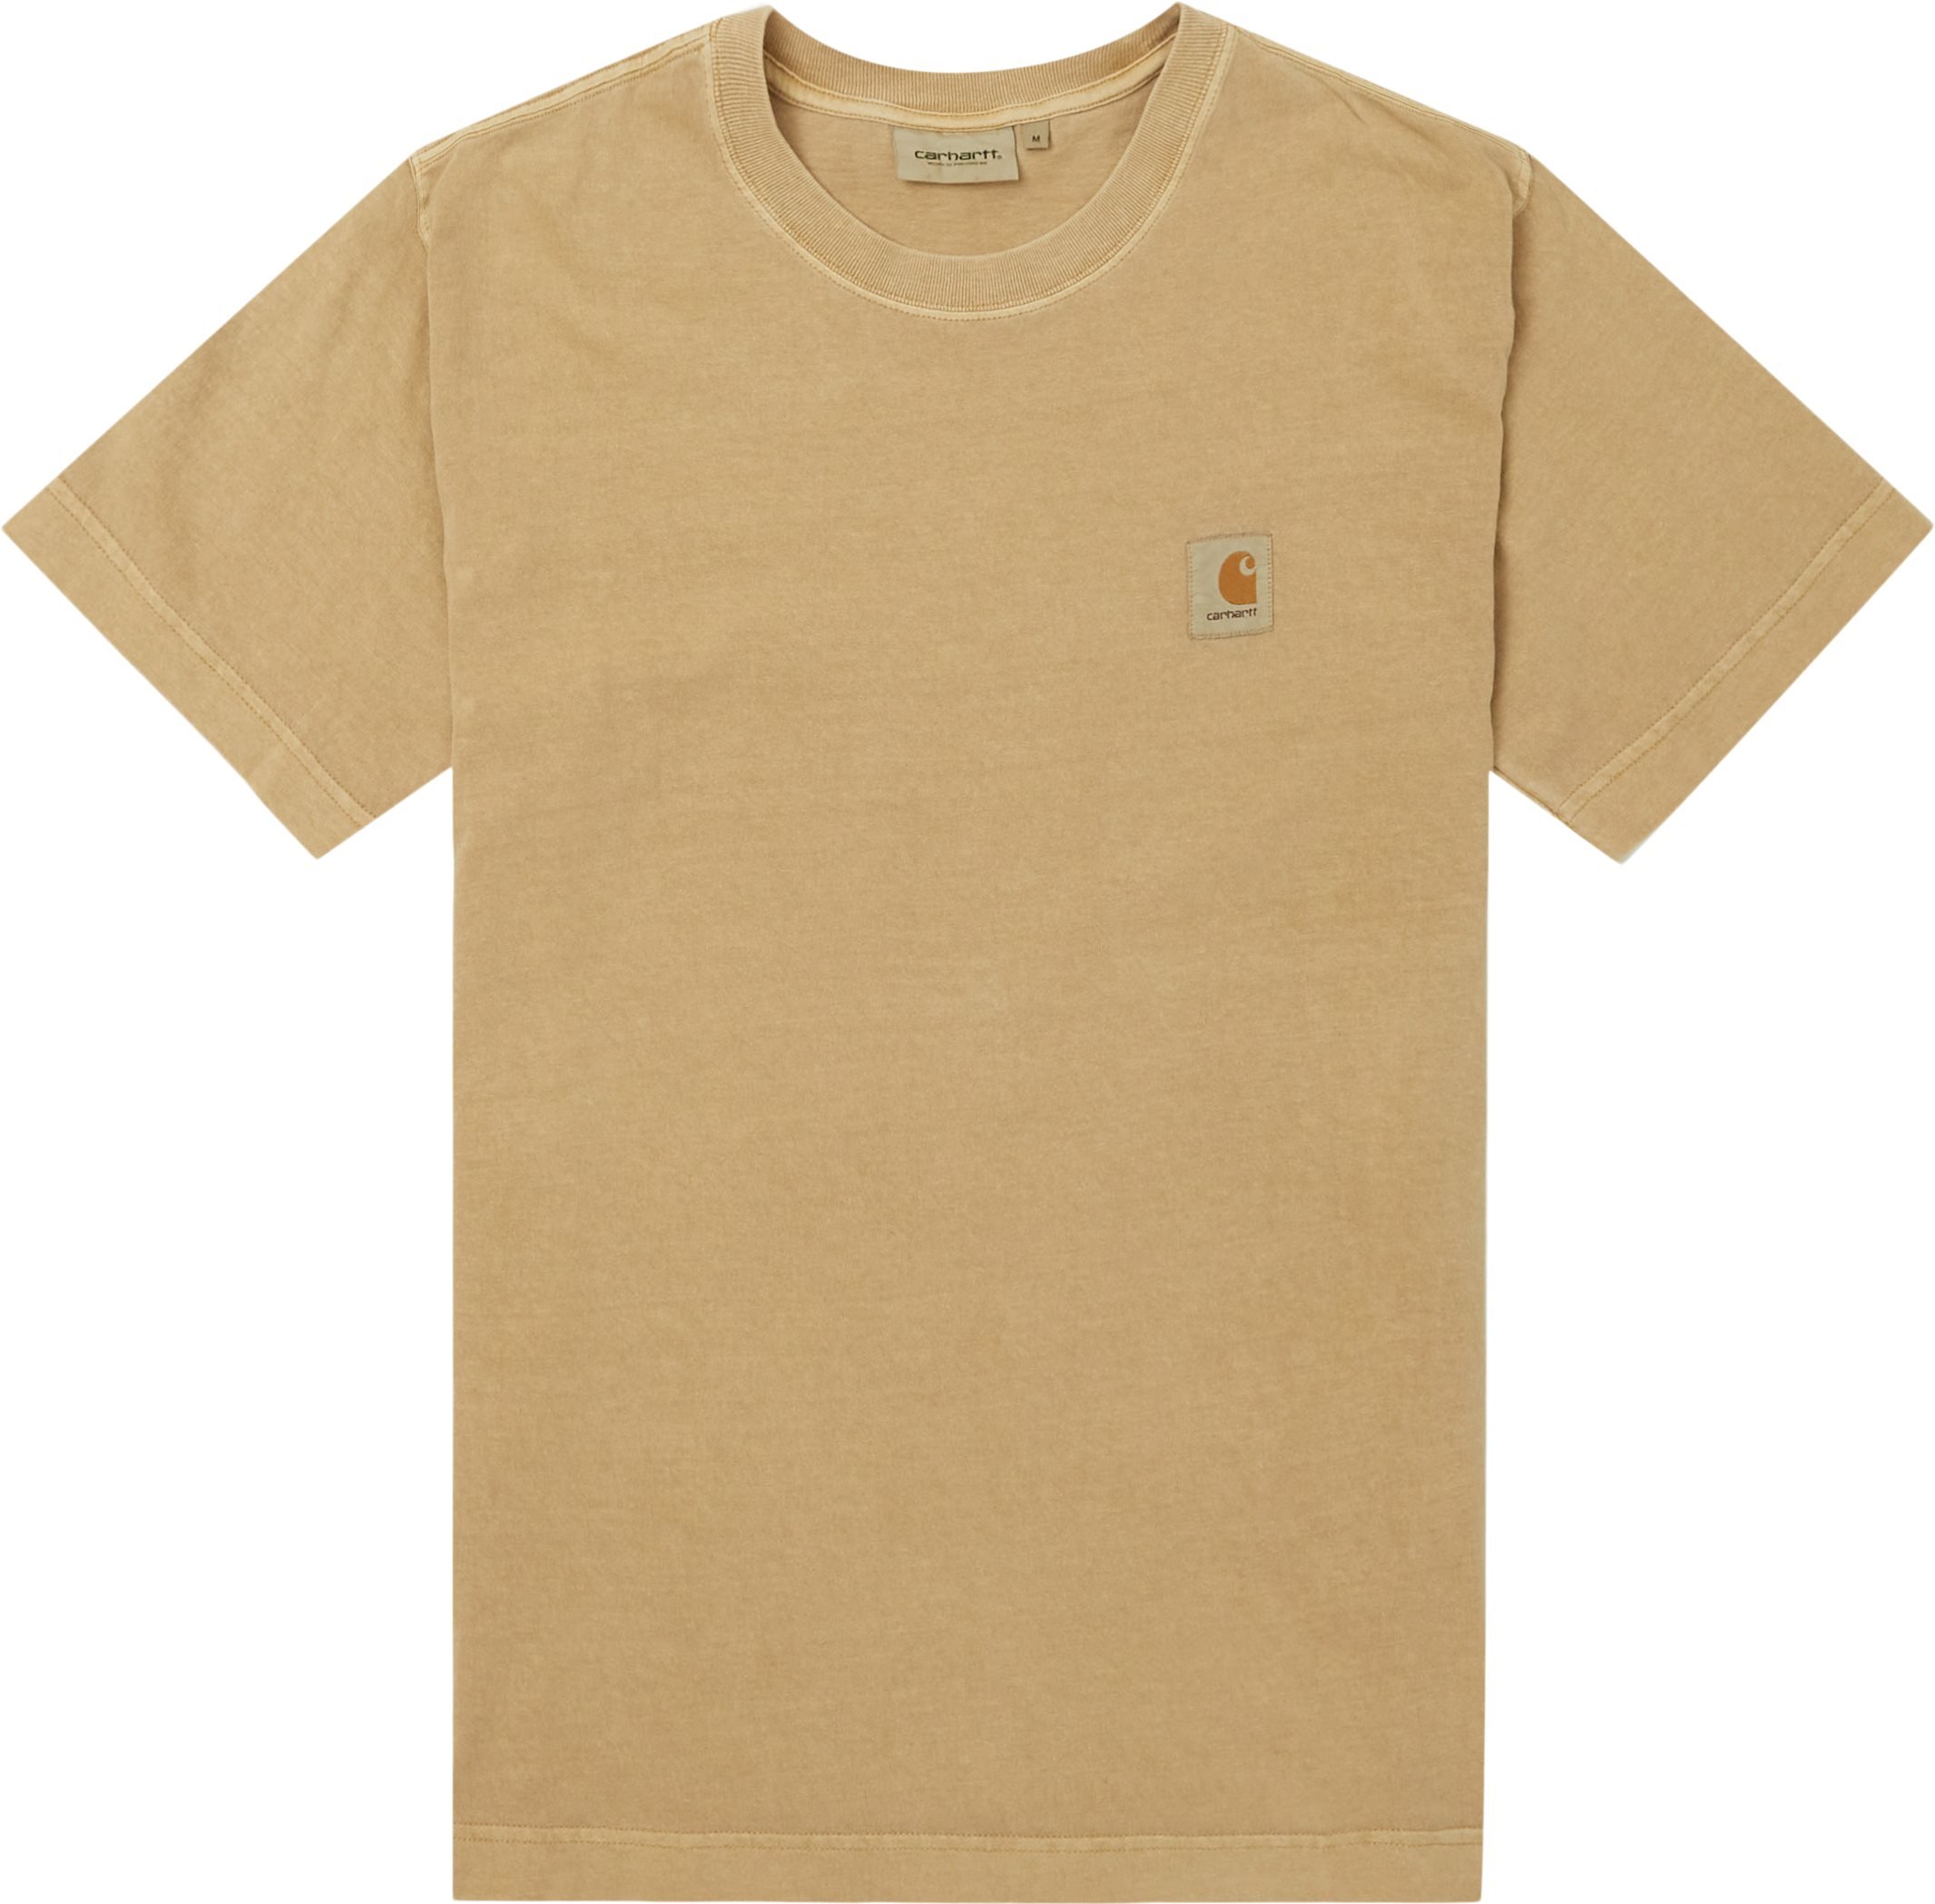 Nelson Tee - T-shirts - Regular fit - Brun